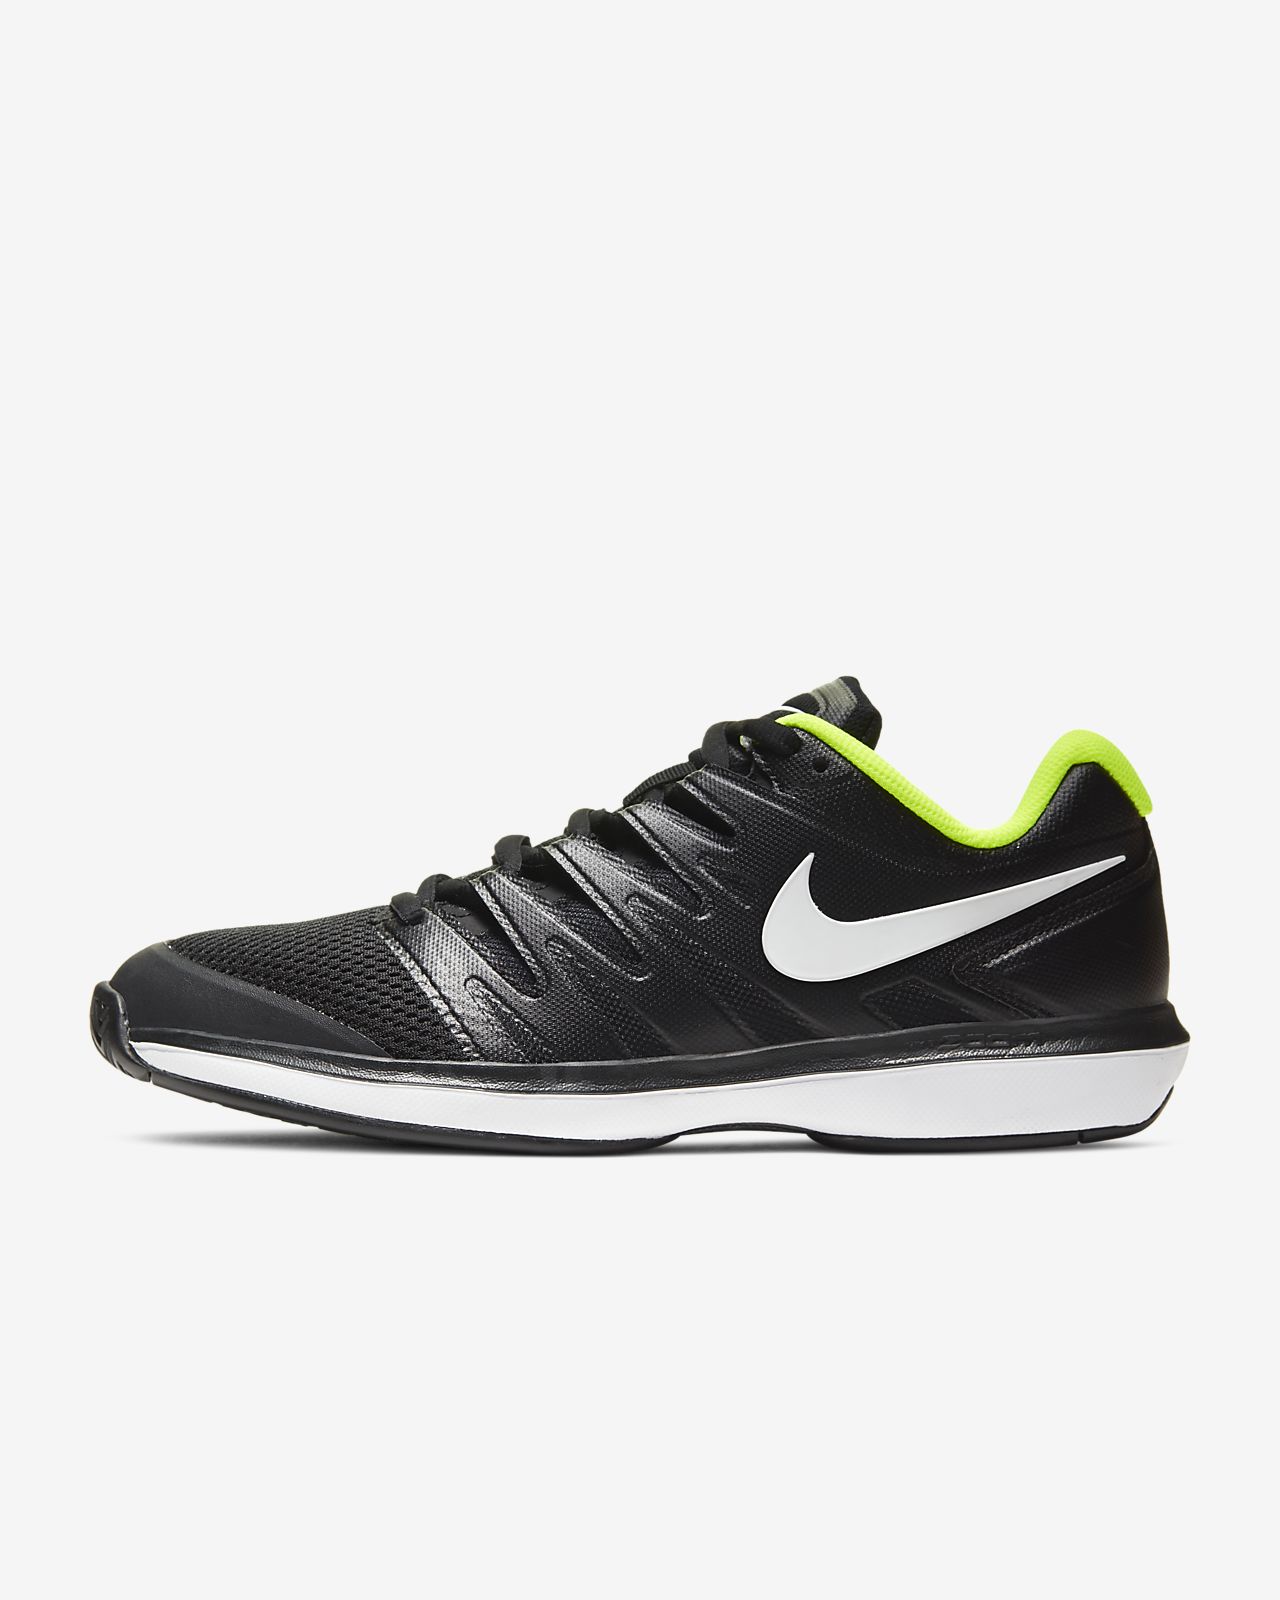 Hard Court Tennis Shoe. Nike NZ